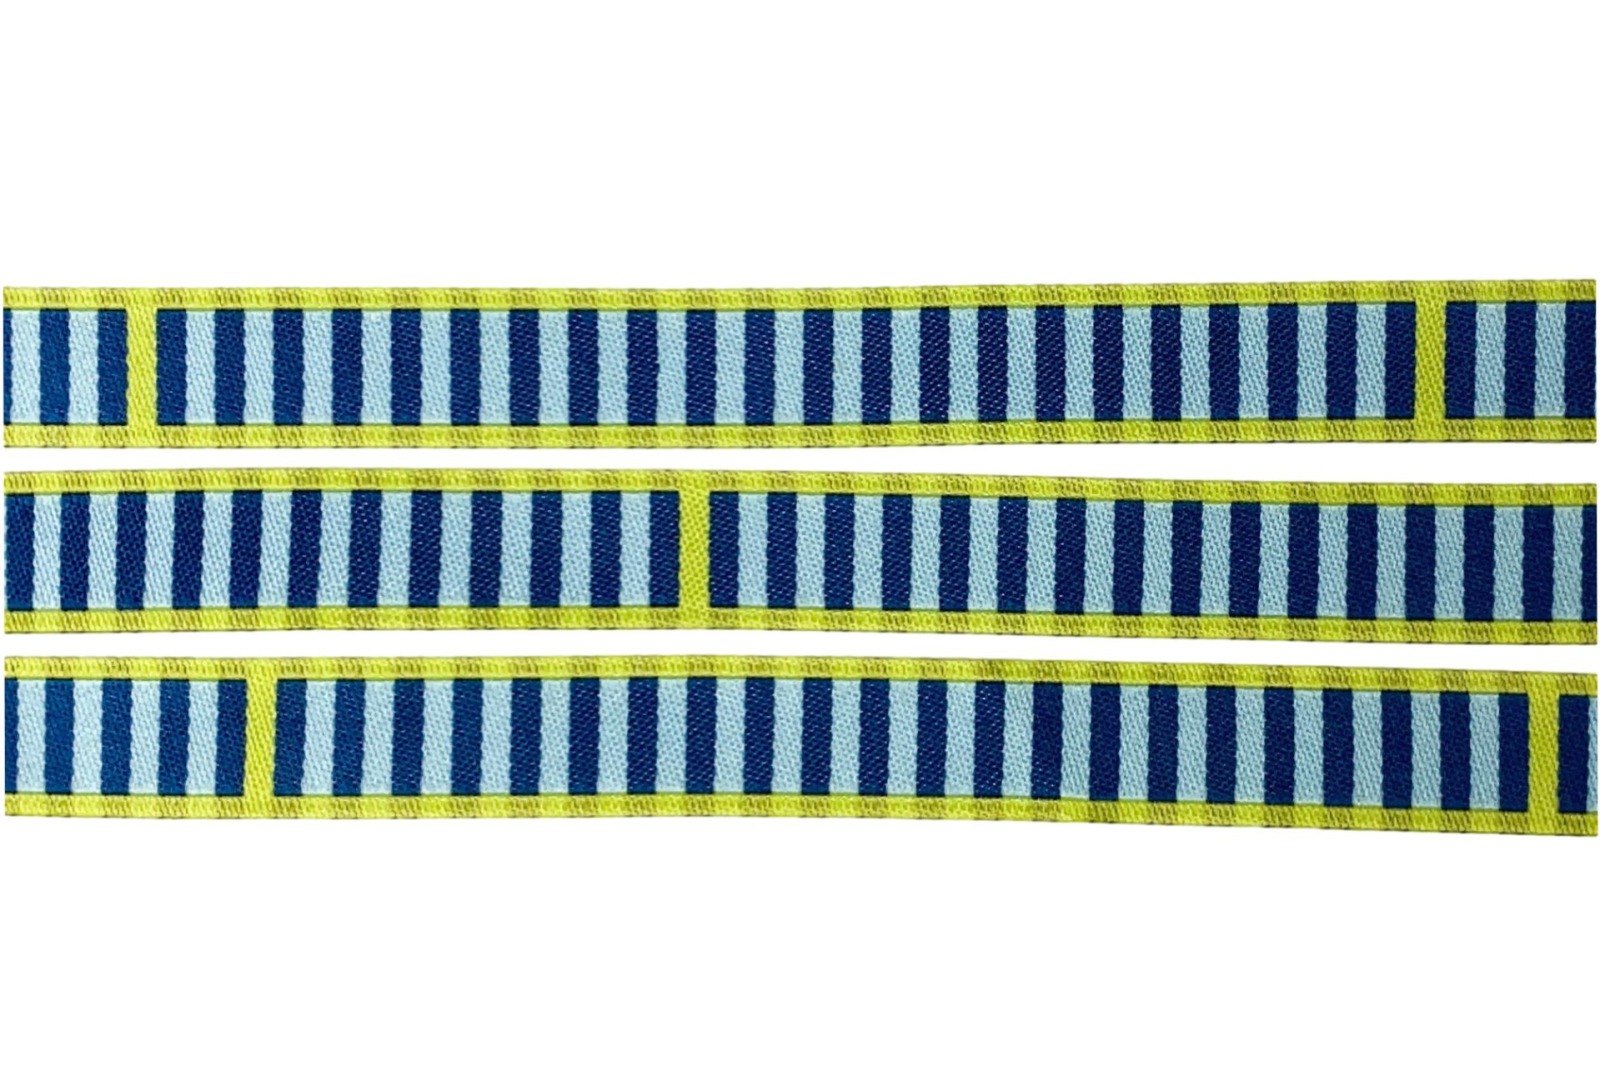 Webband Streifen - Eins, Zwei, Drei-Streifen - petrol - blaubeerstern - 12 mm 2